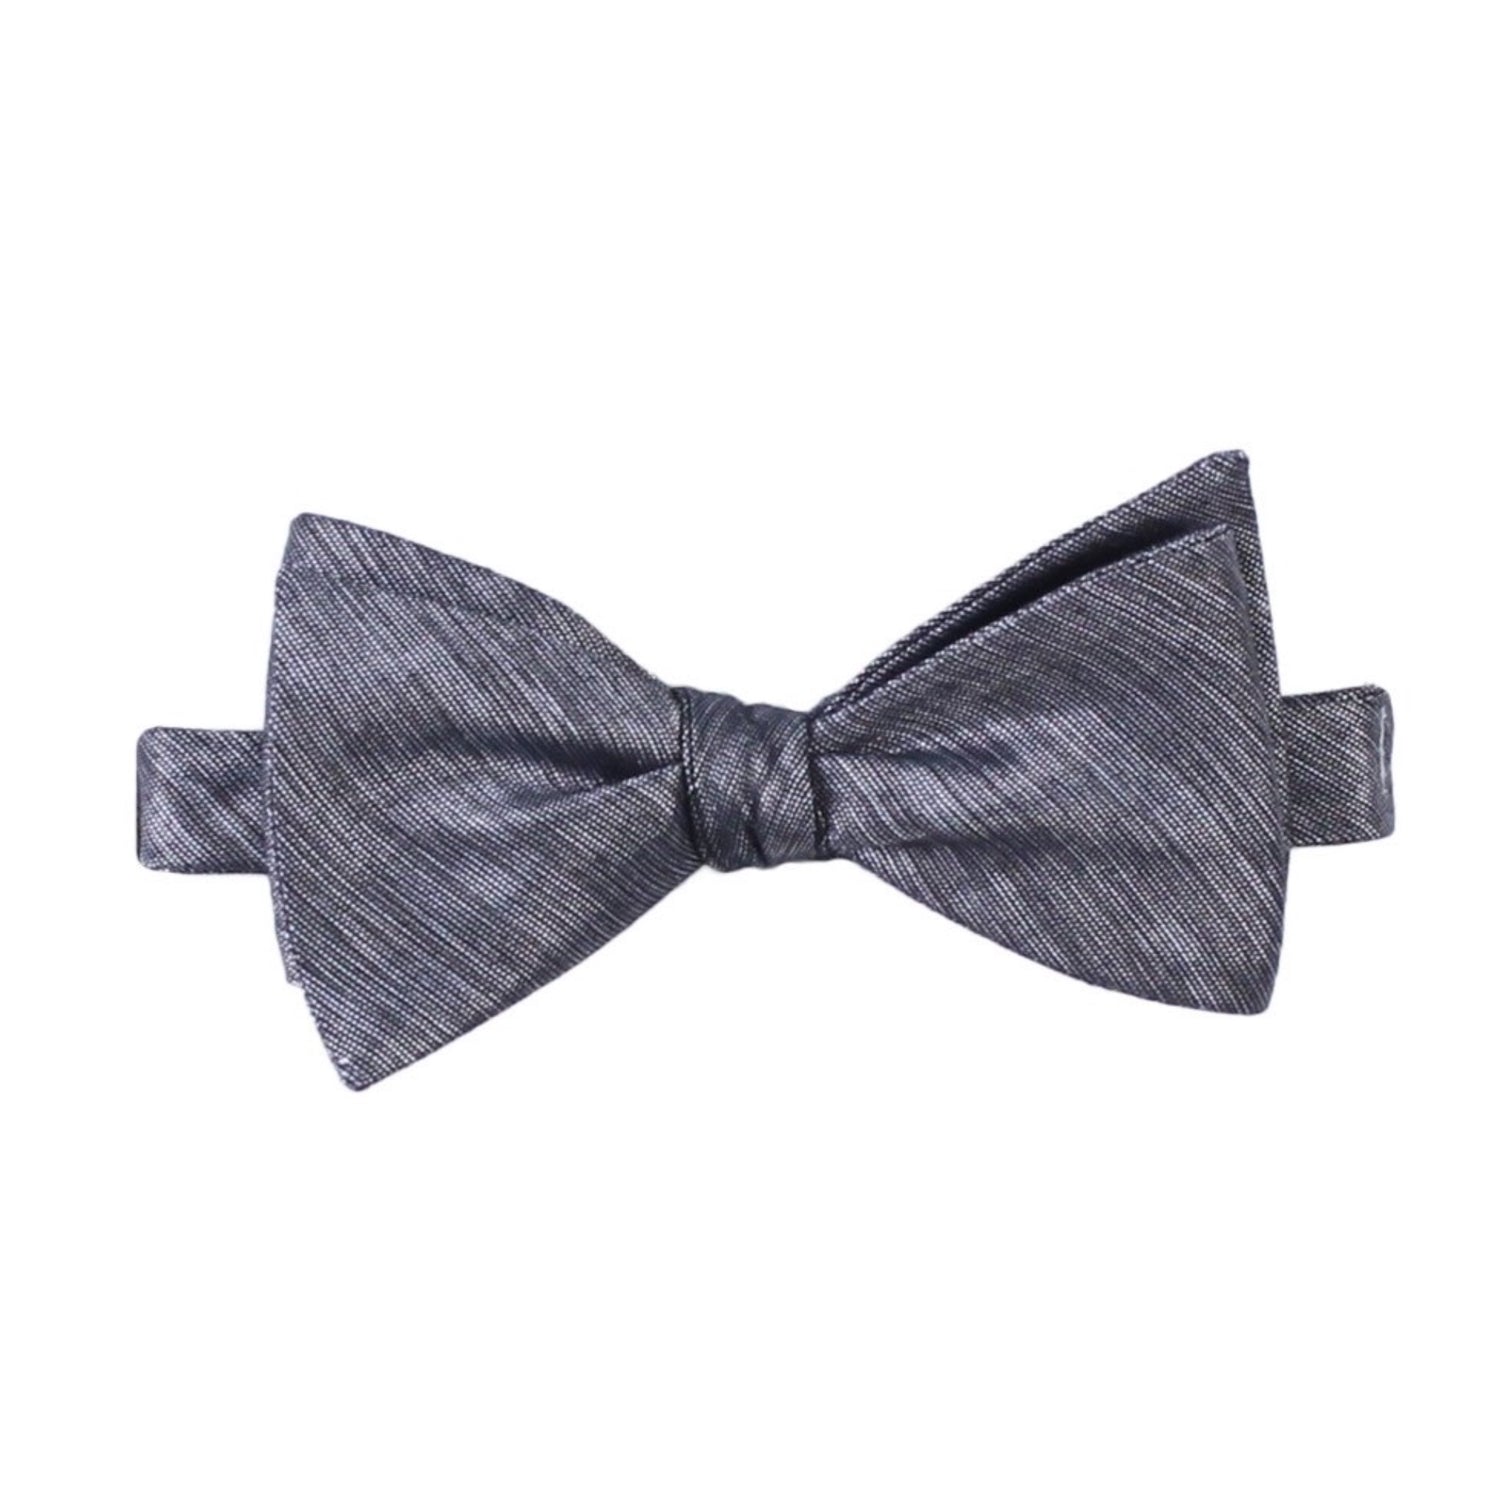 Gray silver black self tie bow tie by German Valdivia 